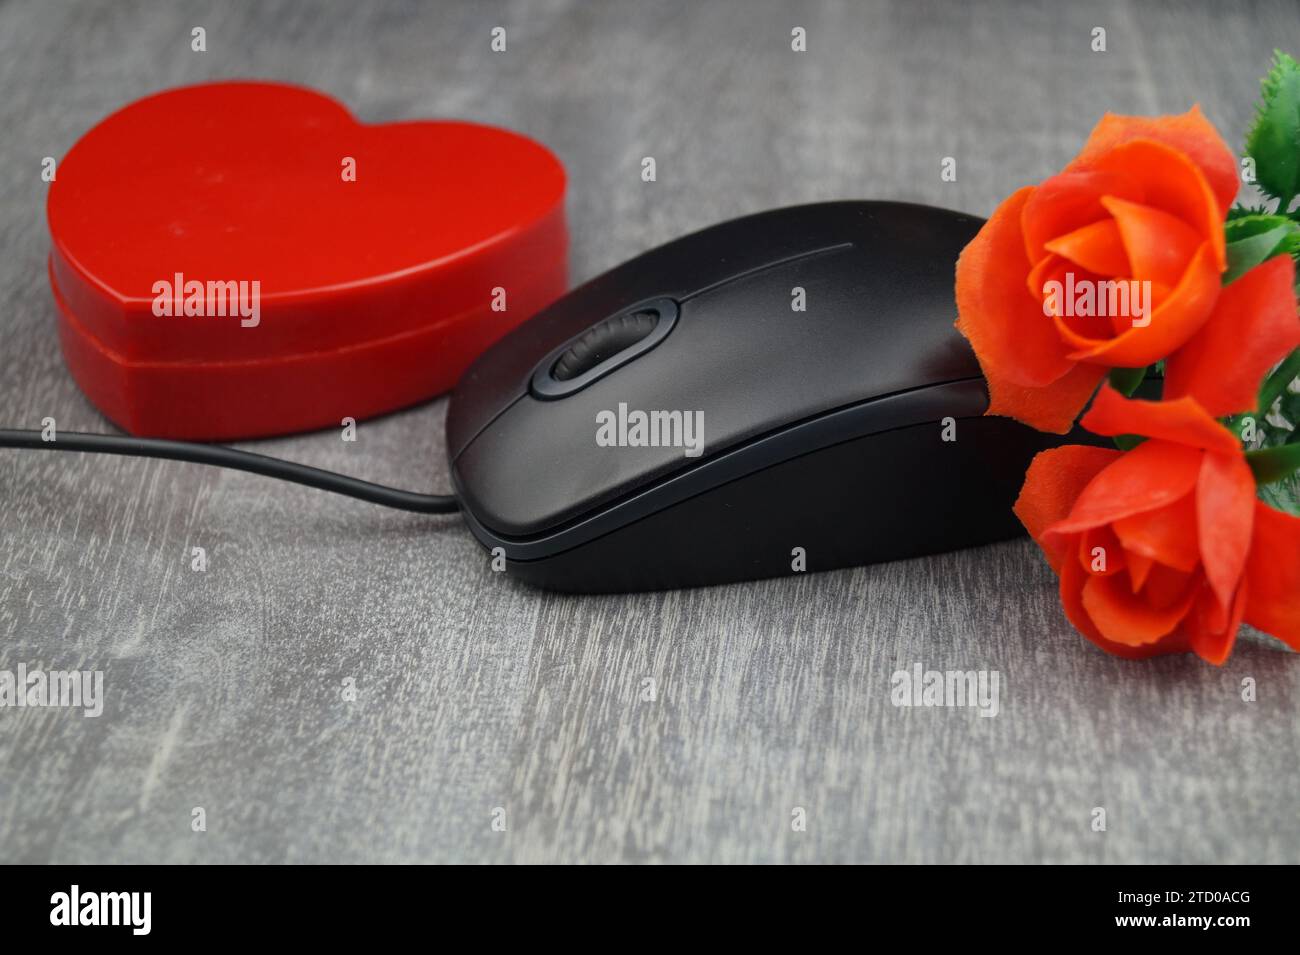 Rotes Herz und rote Rosen mit Computermaus, symbolisches Bild der Liebe online Stockfoto